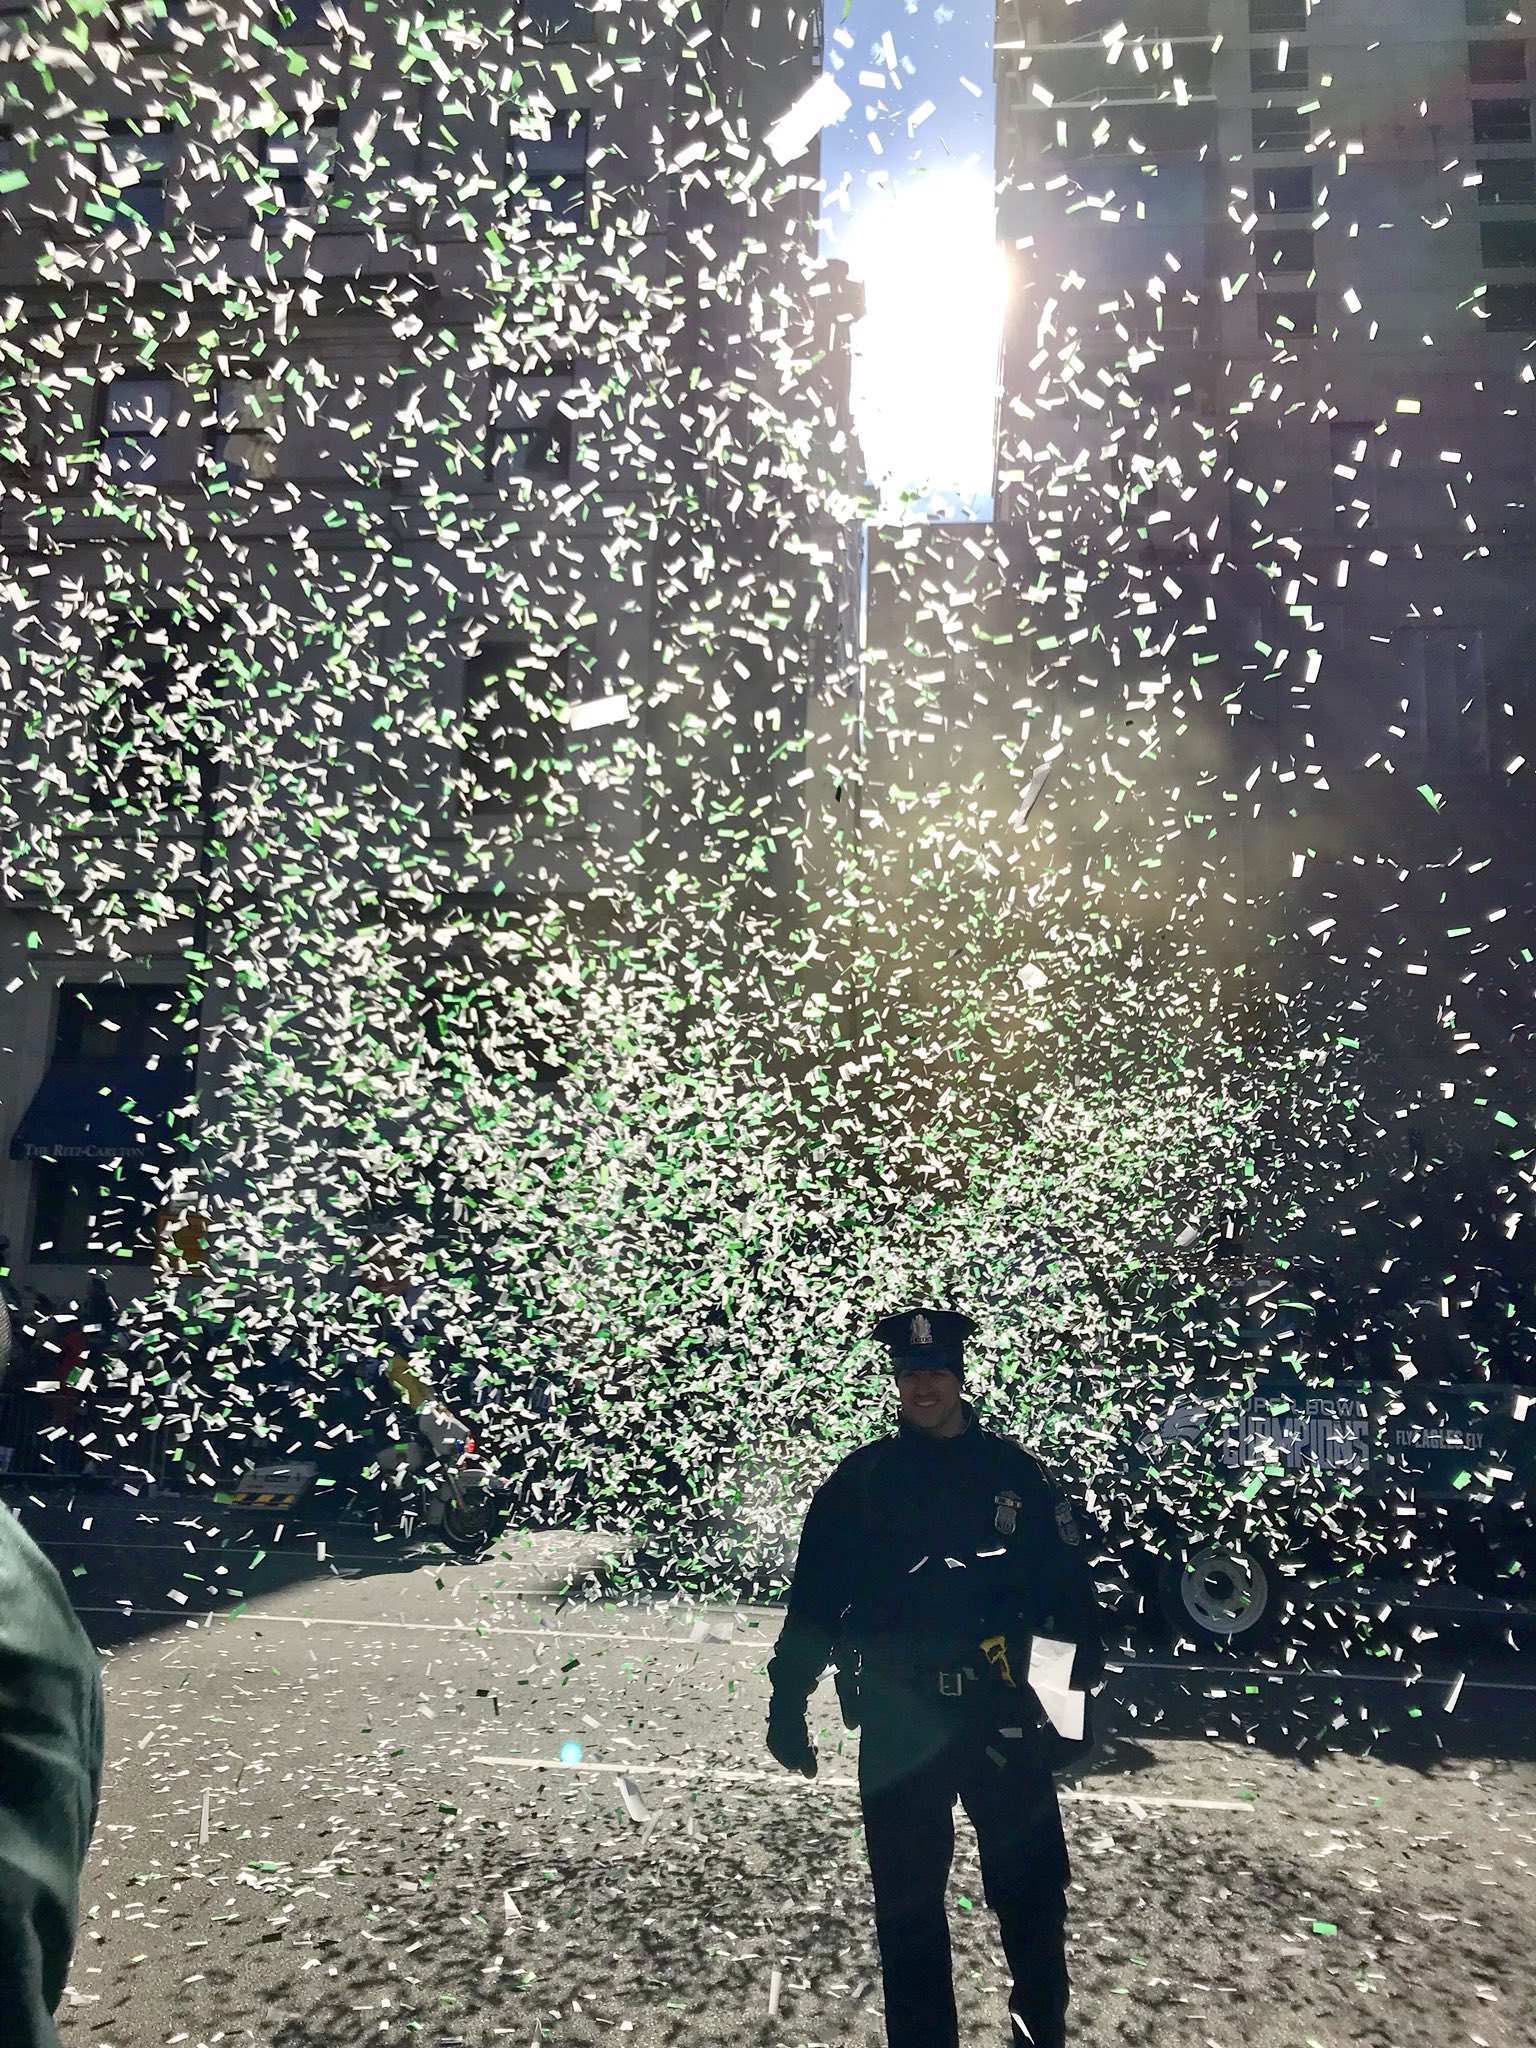 Philadelphia Police officer shrouded in Eagles glitter. Credit: Kim Jordan